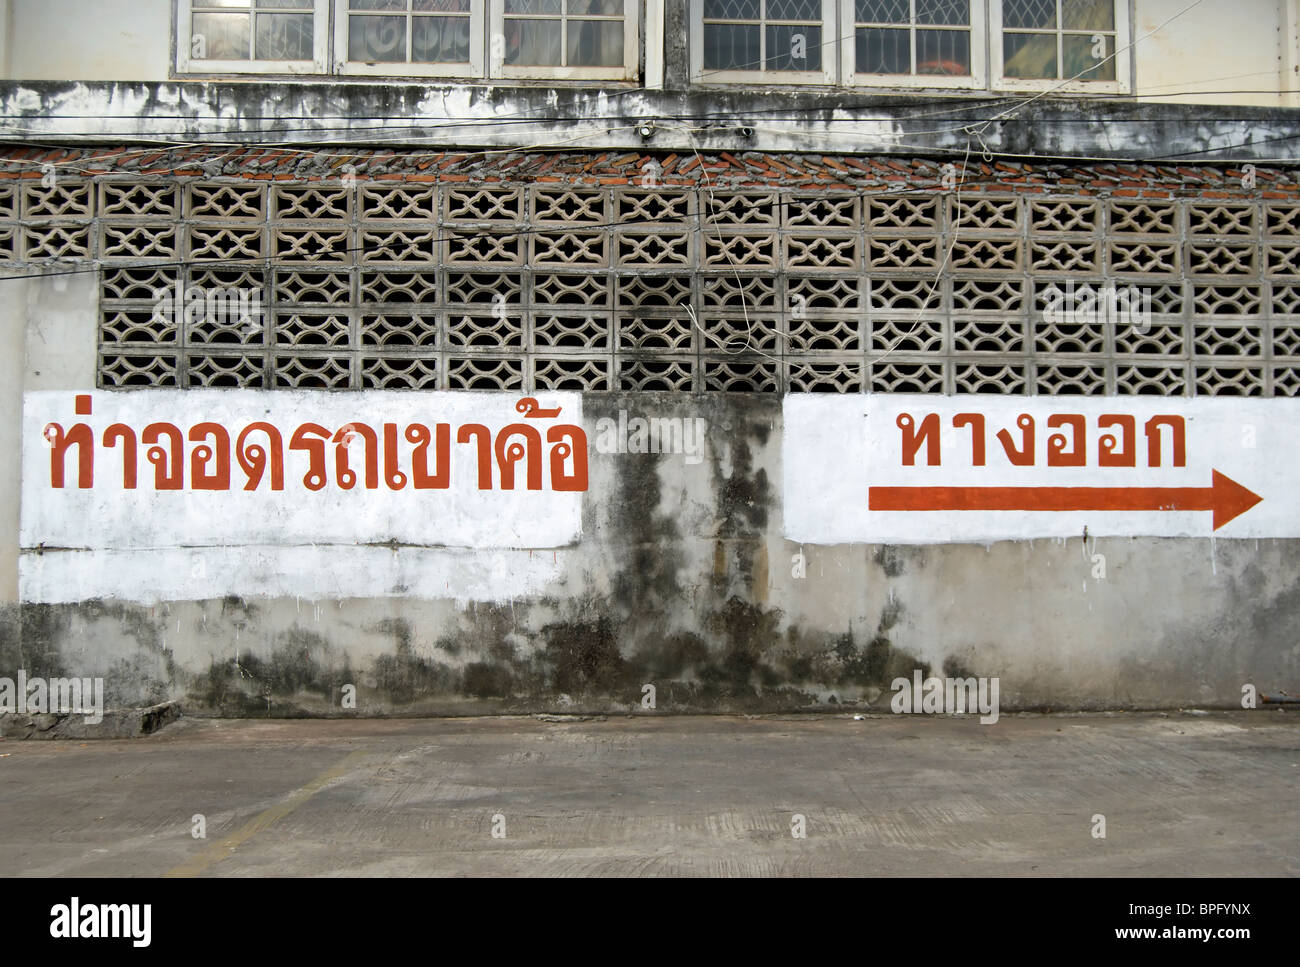 Signe de langue thaï dans un parking à phetchabun, Thaïlande, Asie du Sud-Est, en indiquant 'car park' (gauche) et 'way out' (droite) Banque D'Images